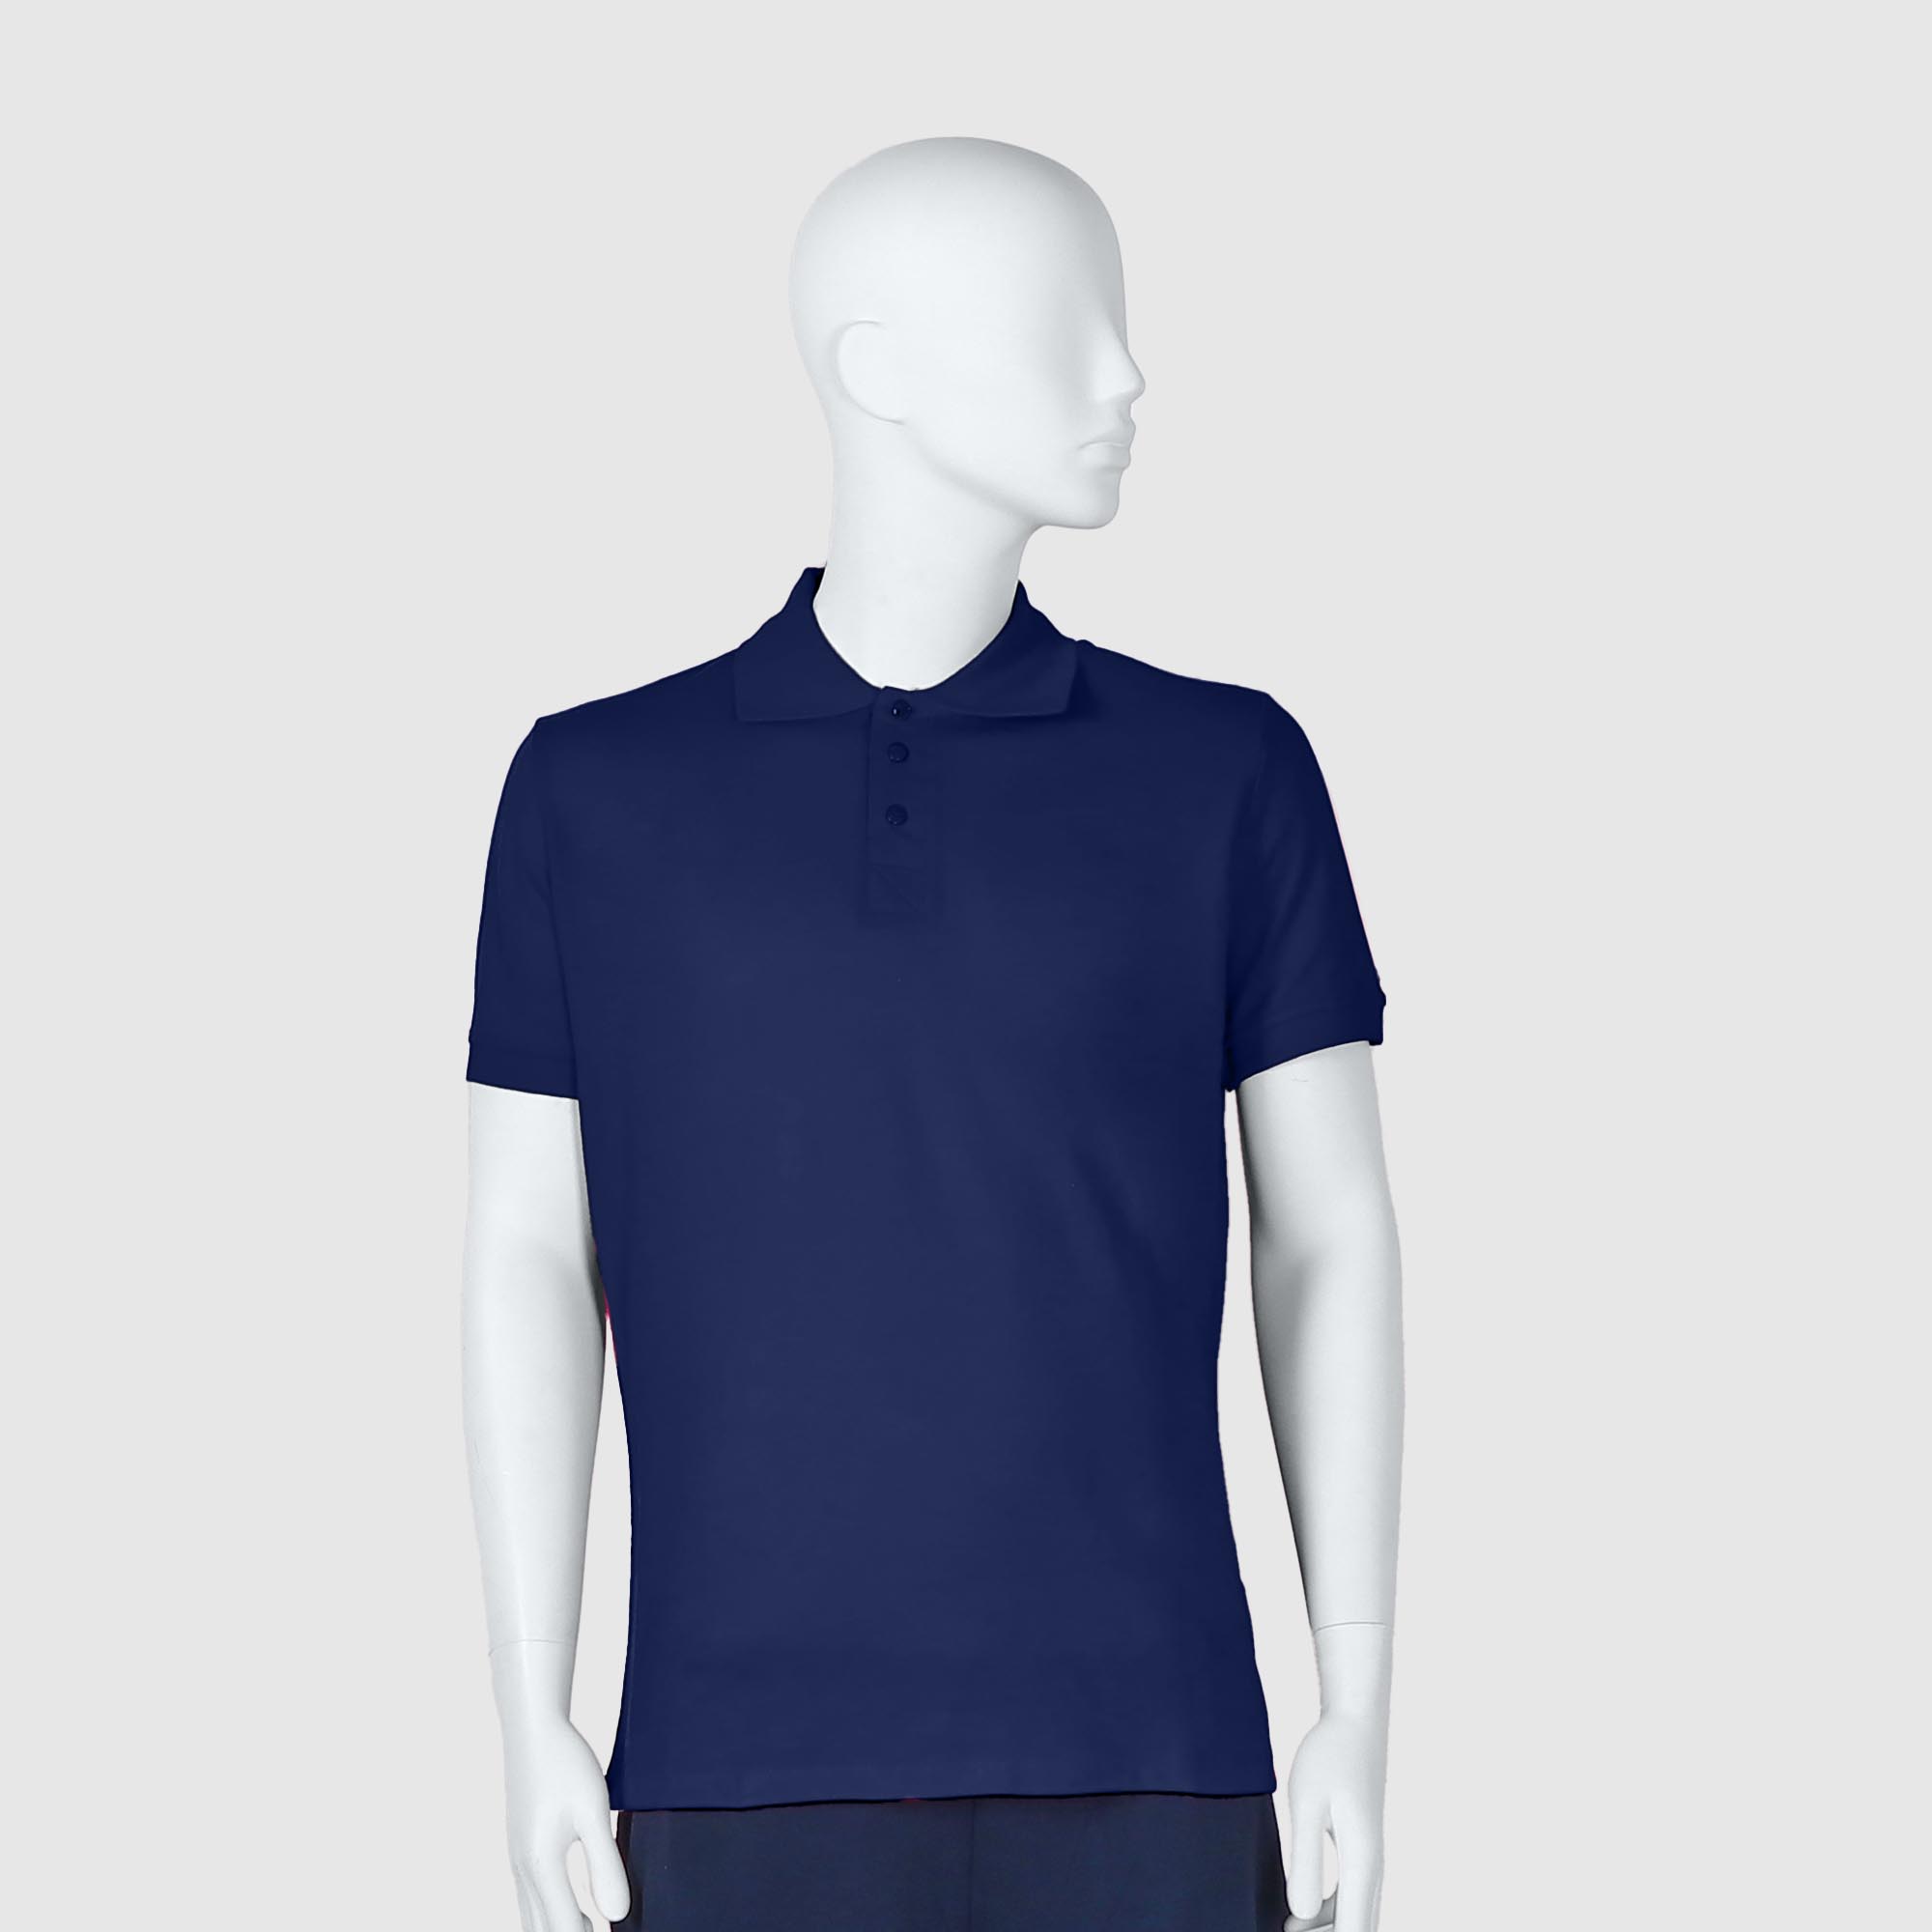 Мужская футболка-поло Diva Teks синяя (DTD-10), цвет синий, размер 48-50